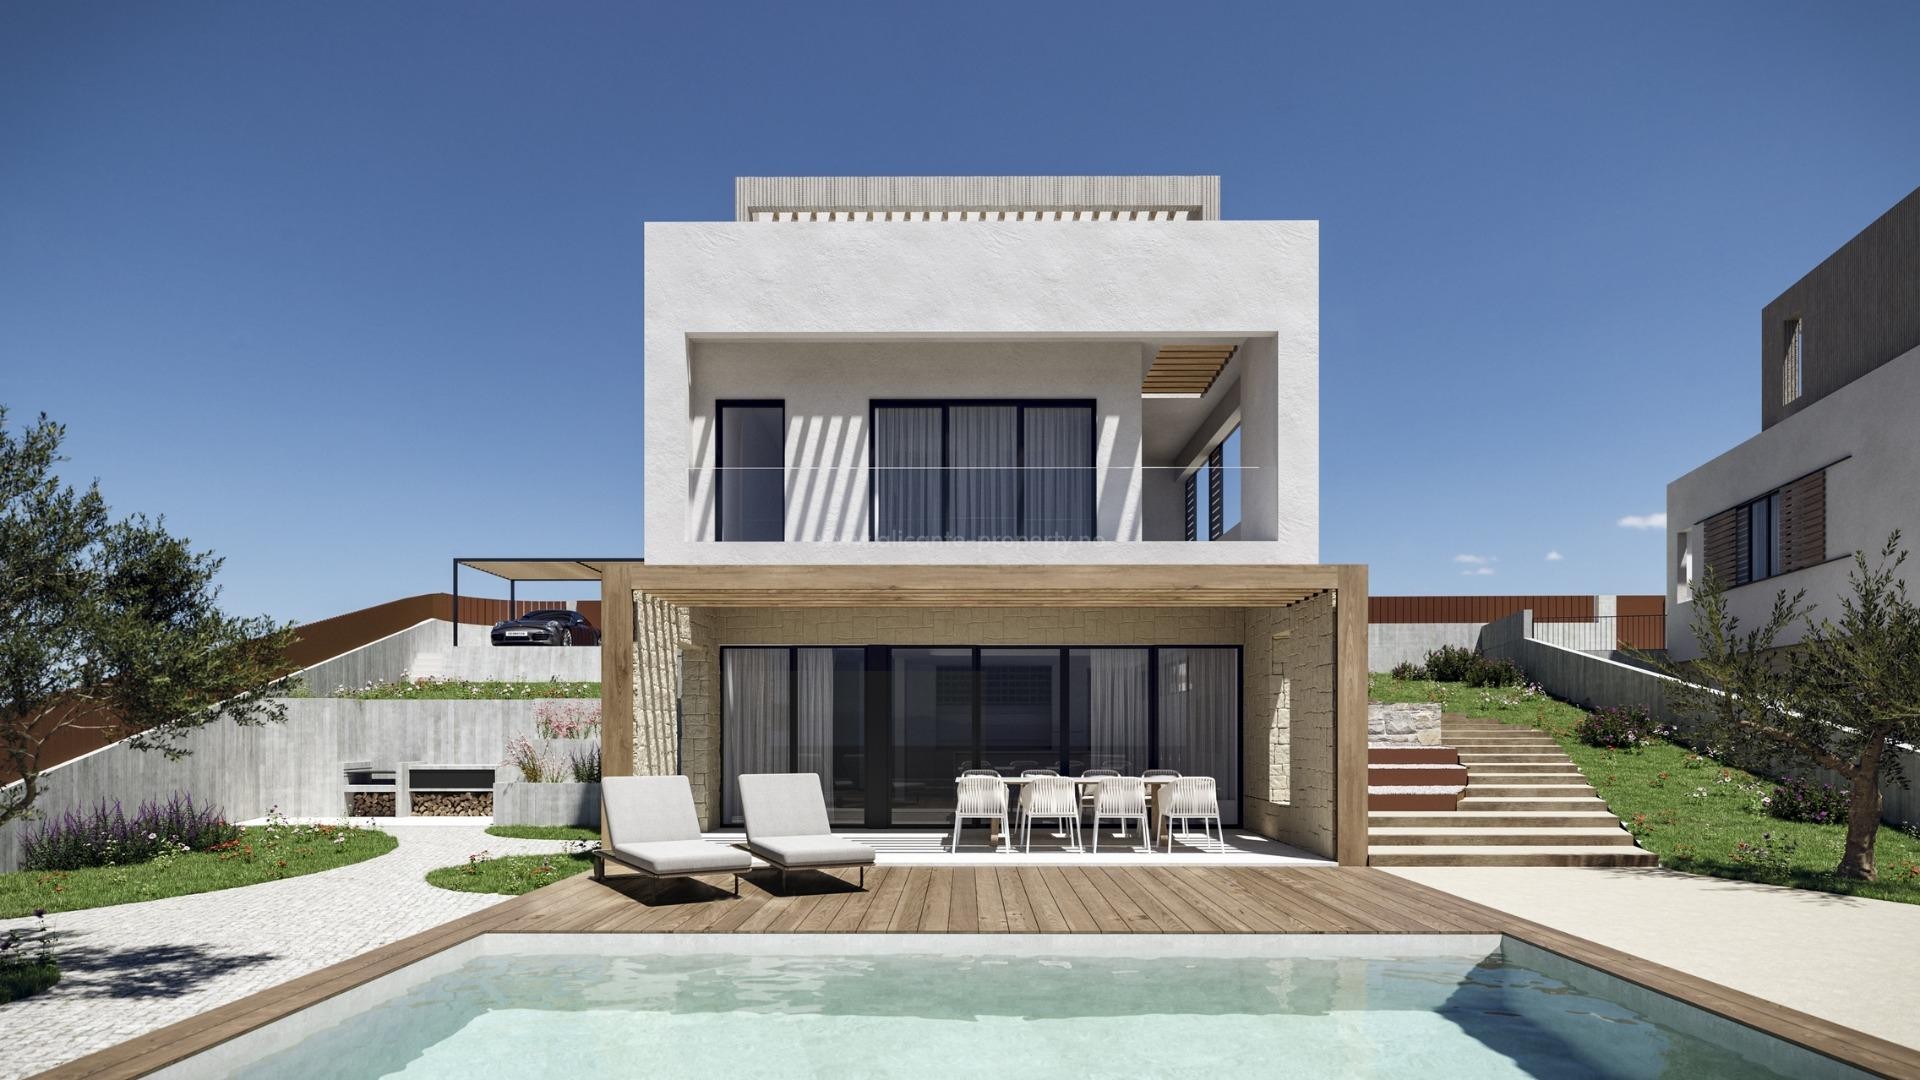 Villaer med 4 soverom og 4 bad i Finestrat, privat hage med basseng med fantastisk utsikt over Benidorm. Ligger i Marina Baixa-regionen på Costa Blanca